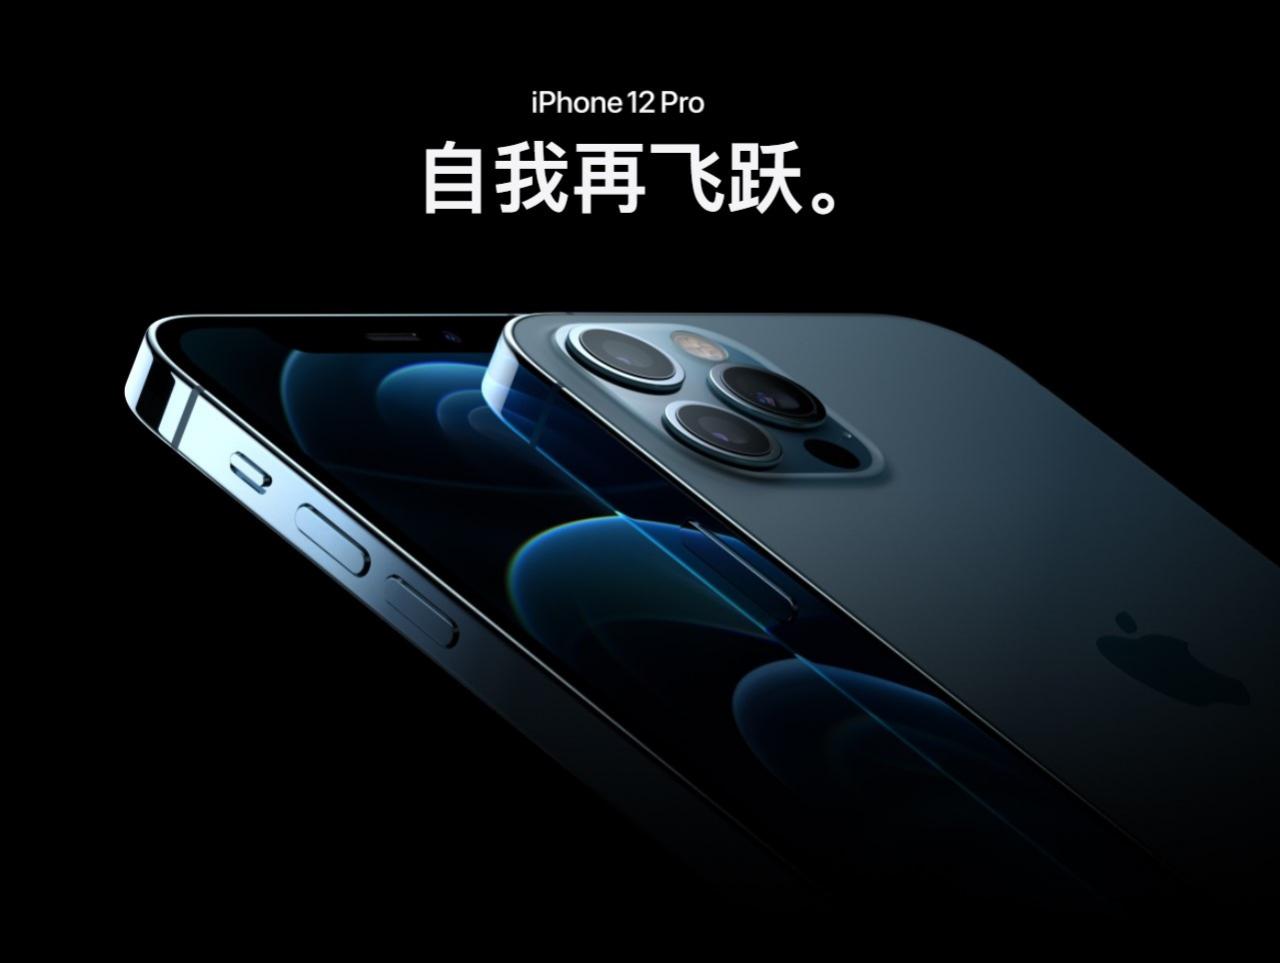 消息称京东方上周已完成苹果 iPhone OLED 首批出货